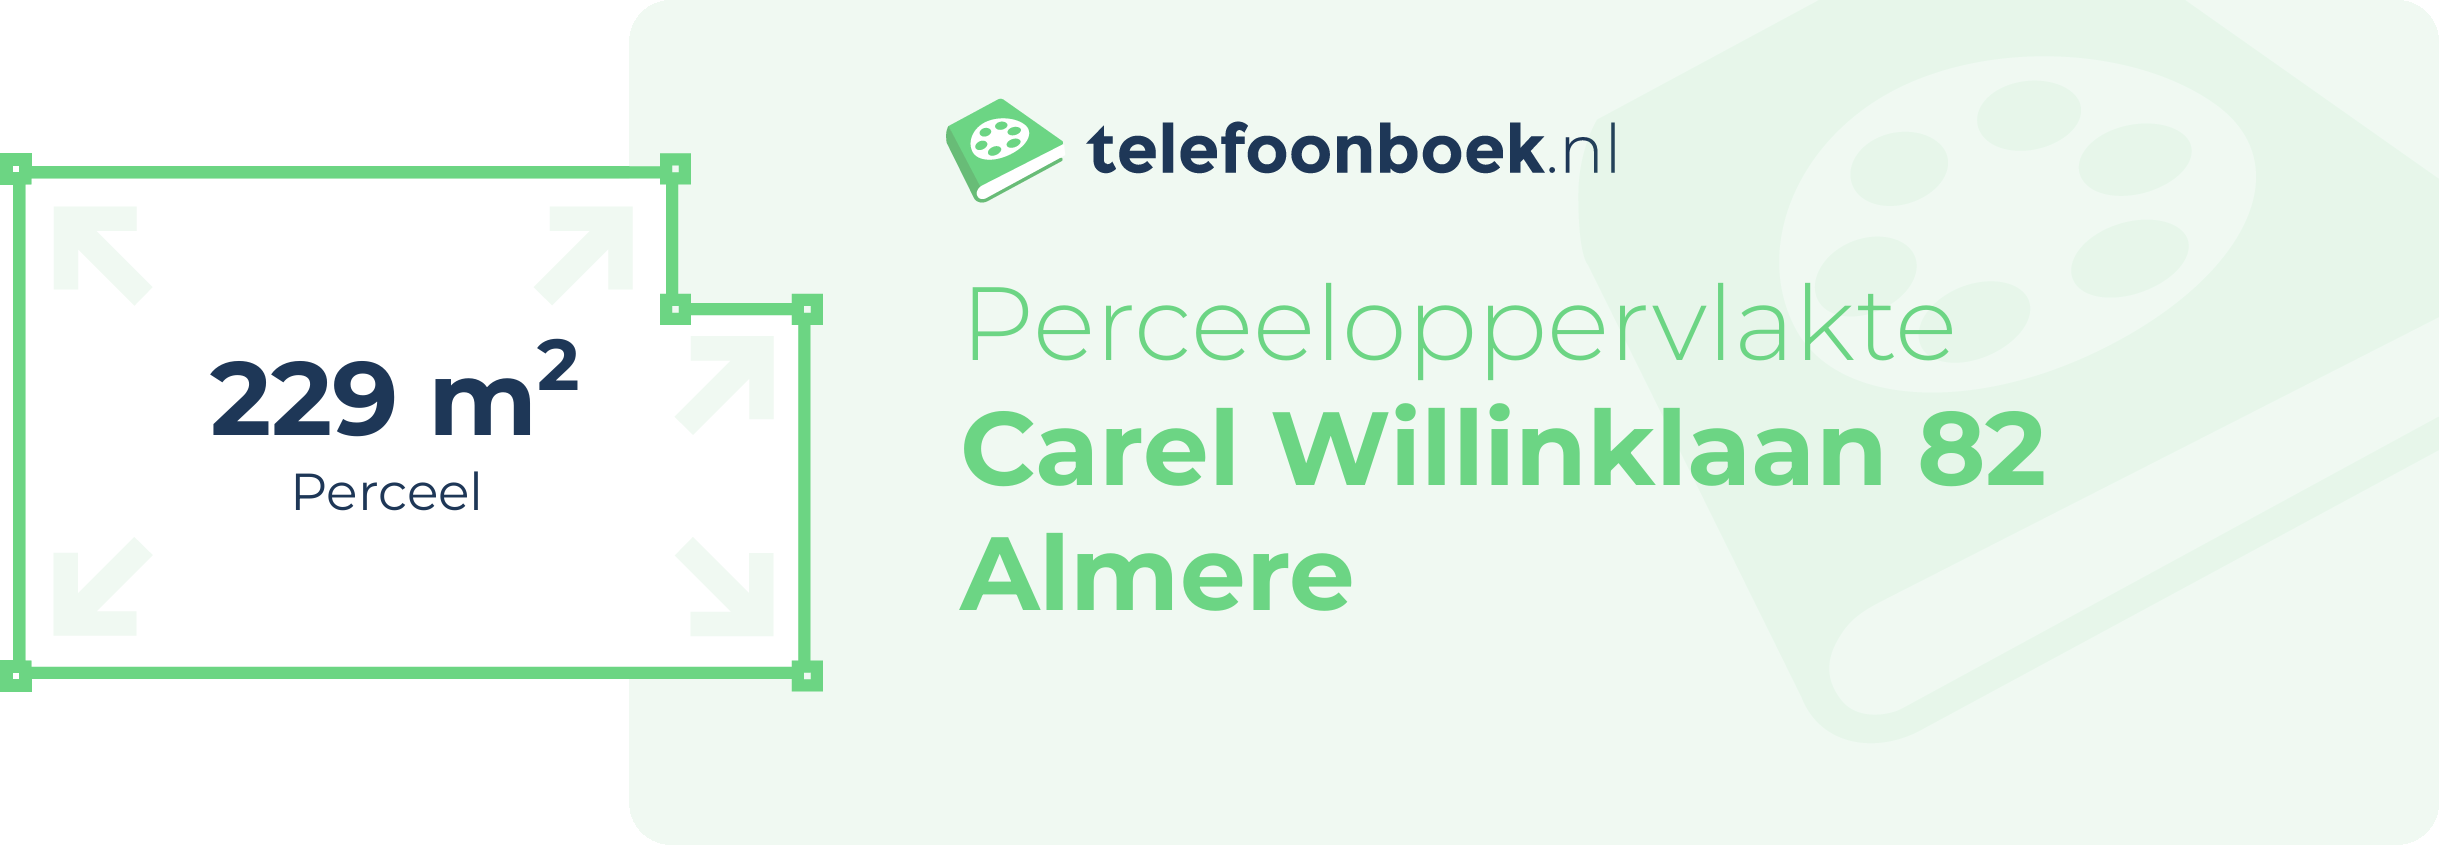 Perceeloppervlakte Carel Willinklaan 82 Almere